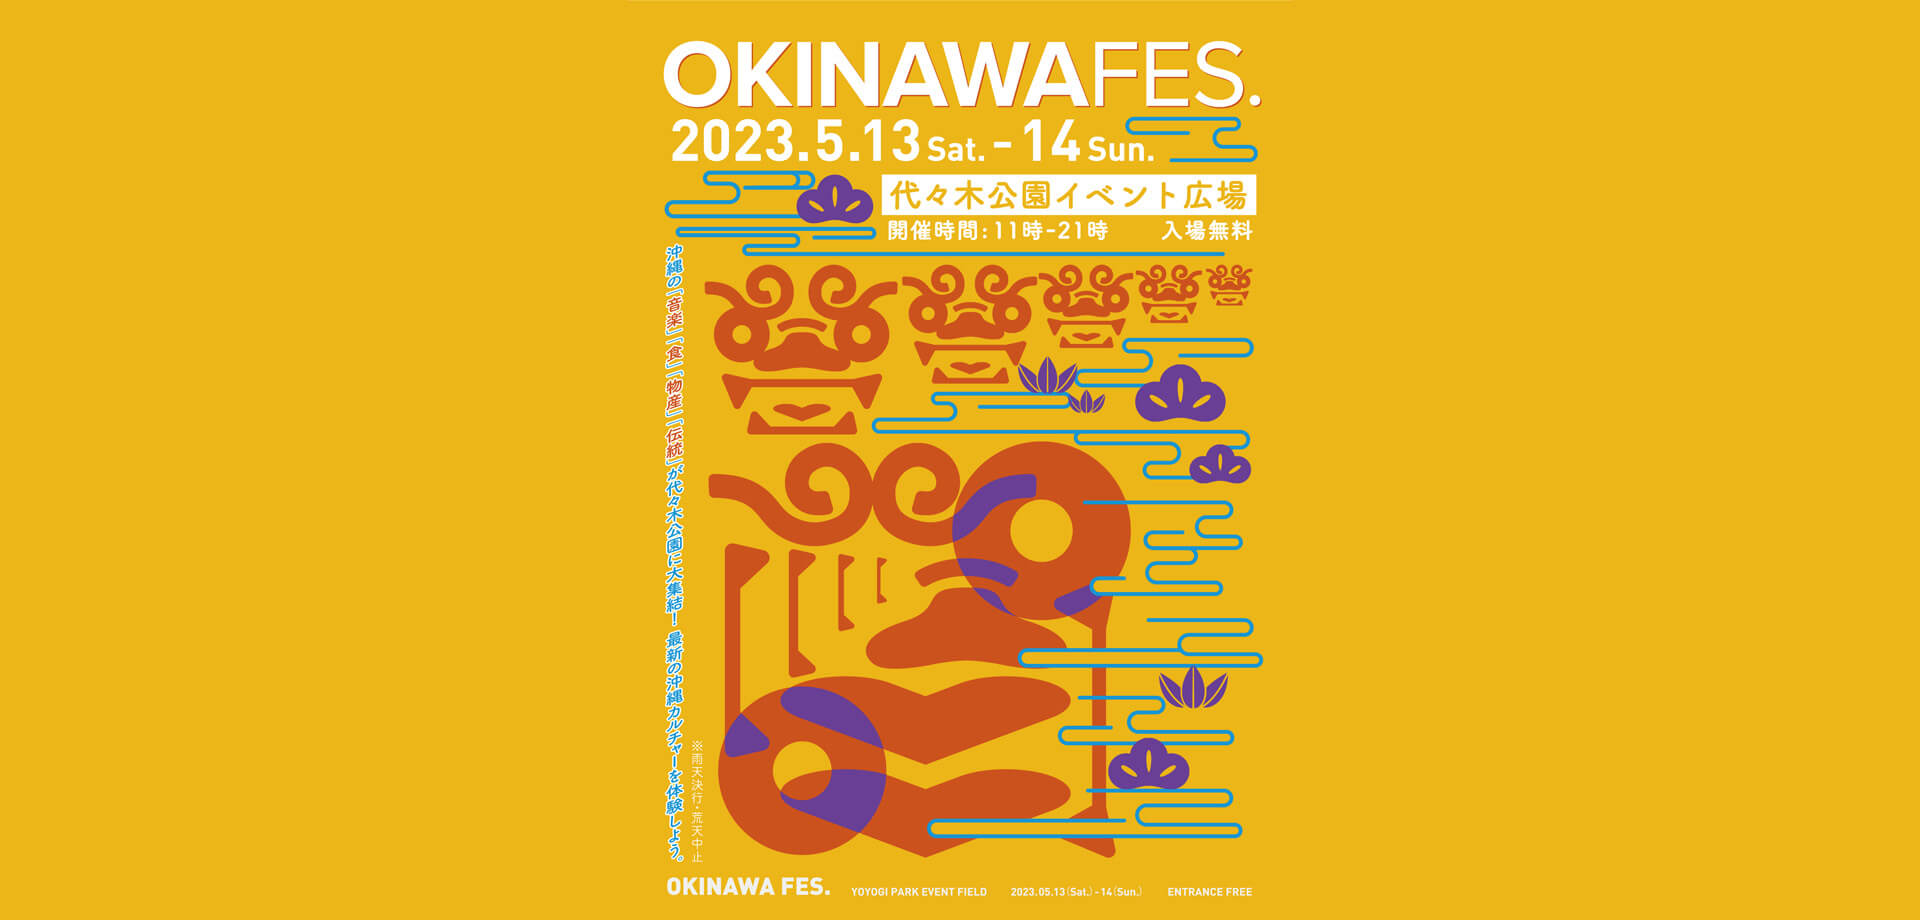 代々木公園 沖縄フェス OKINAWA FES. 2023